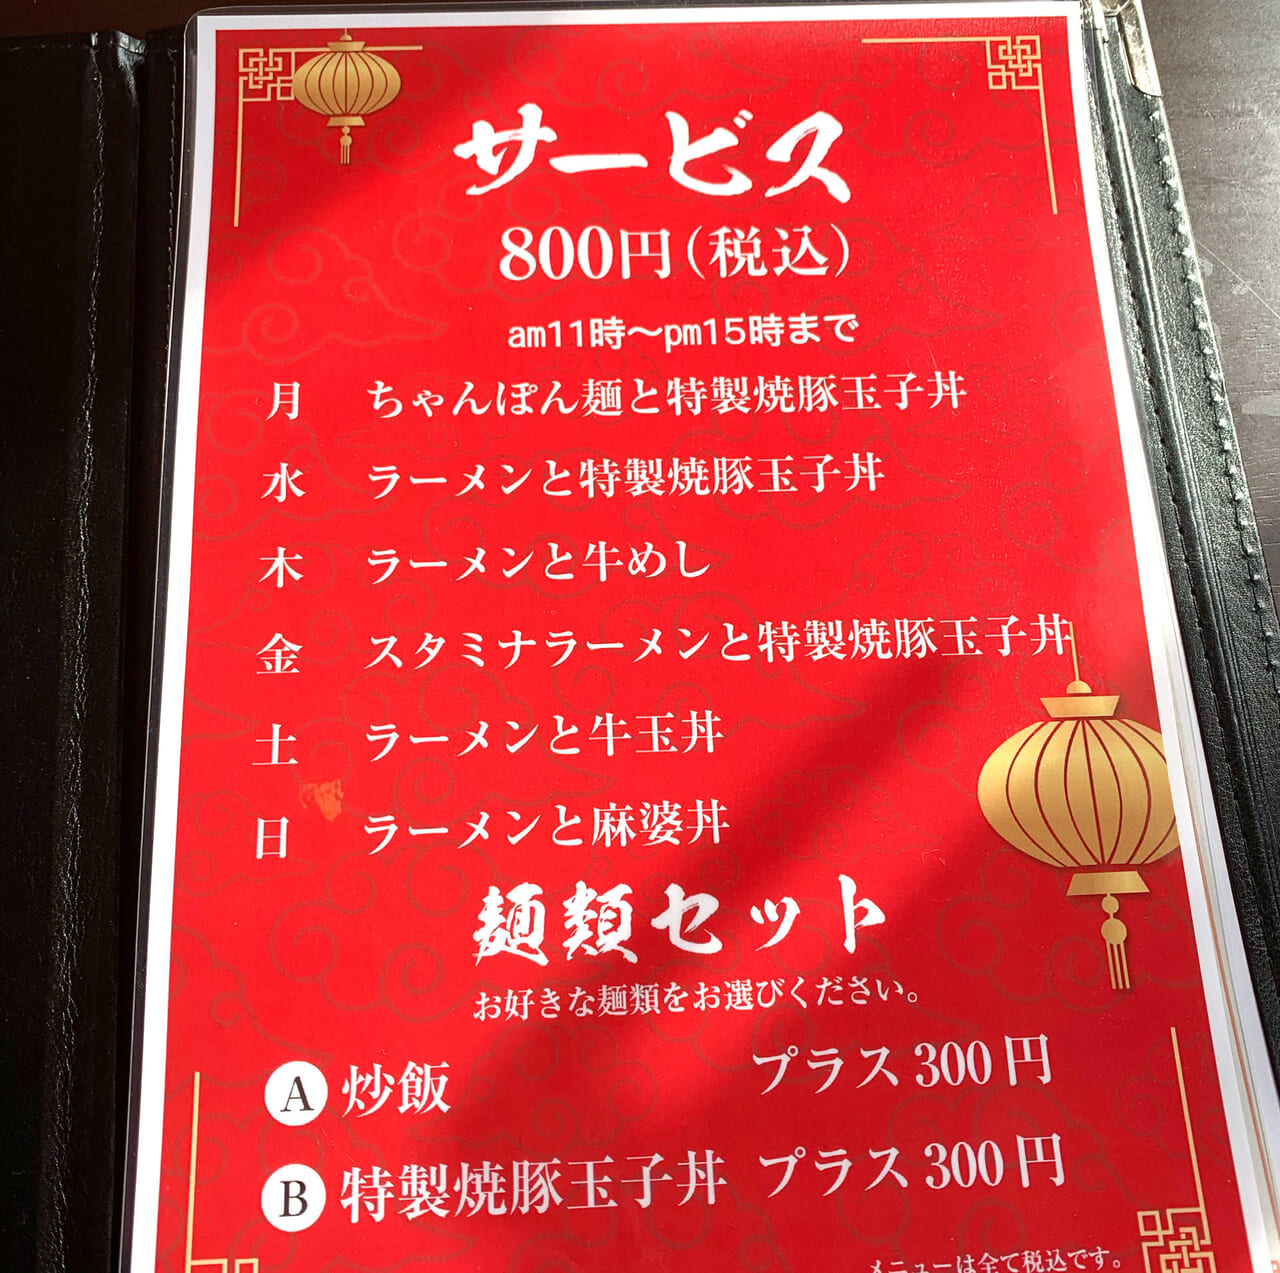 東村の中華料理屋シルクロードが店名を「潯陽」と名前を変えてオープンしています!!